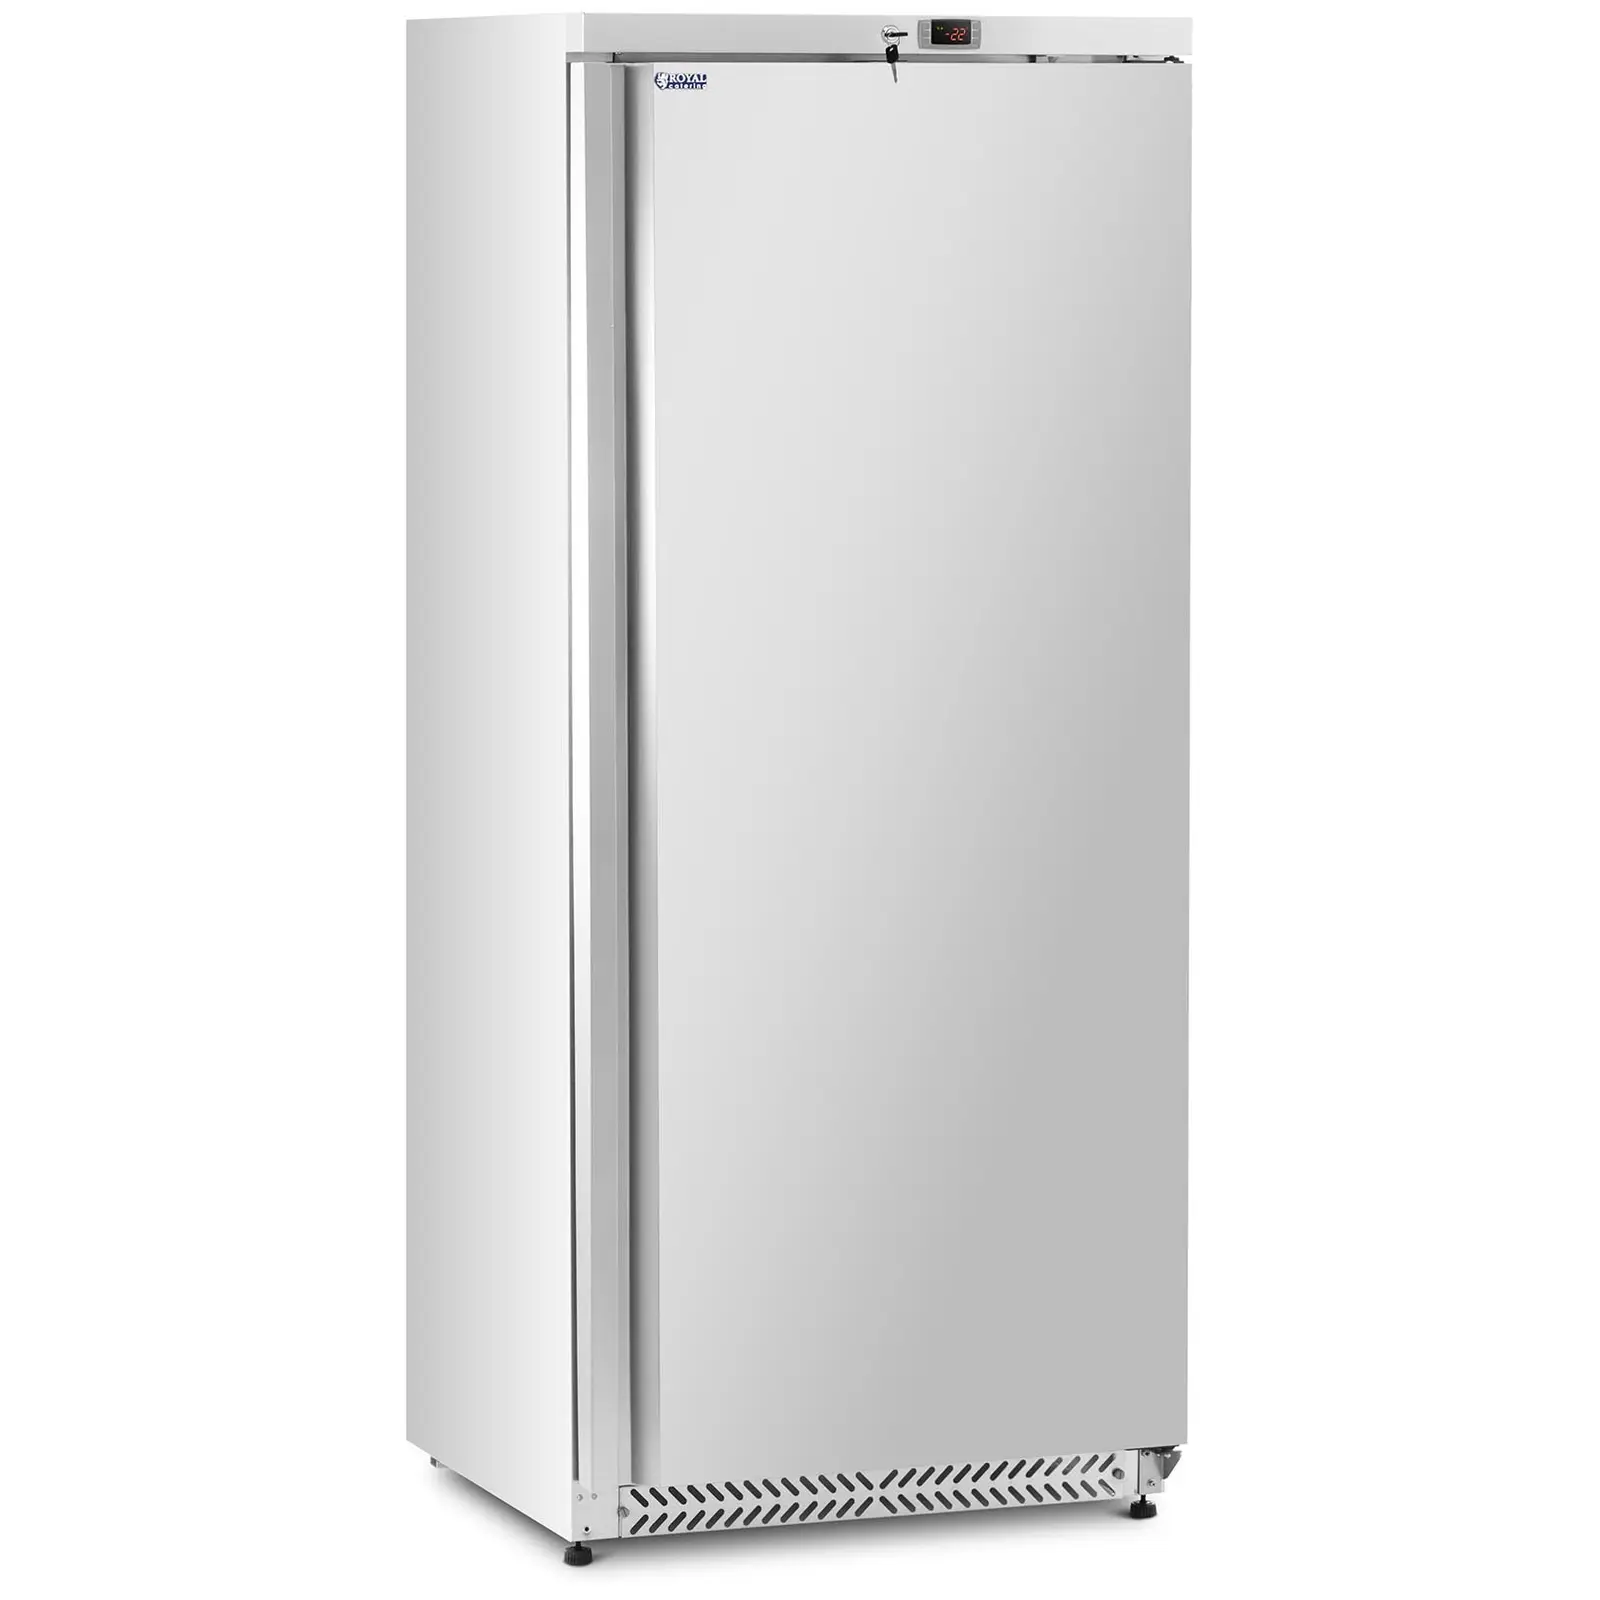 Ocasión Congelador vertical - 590 L - Royal Catering - Plateado - refrigerante R290